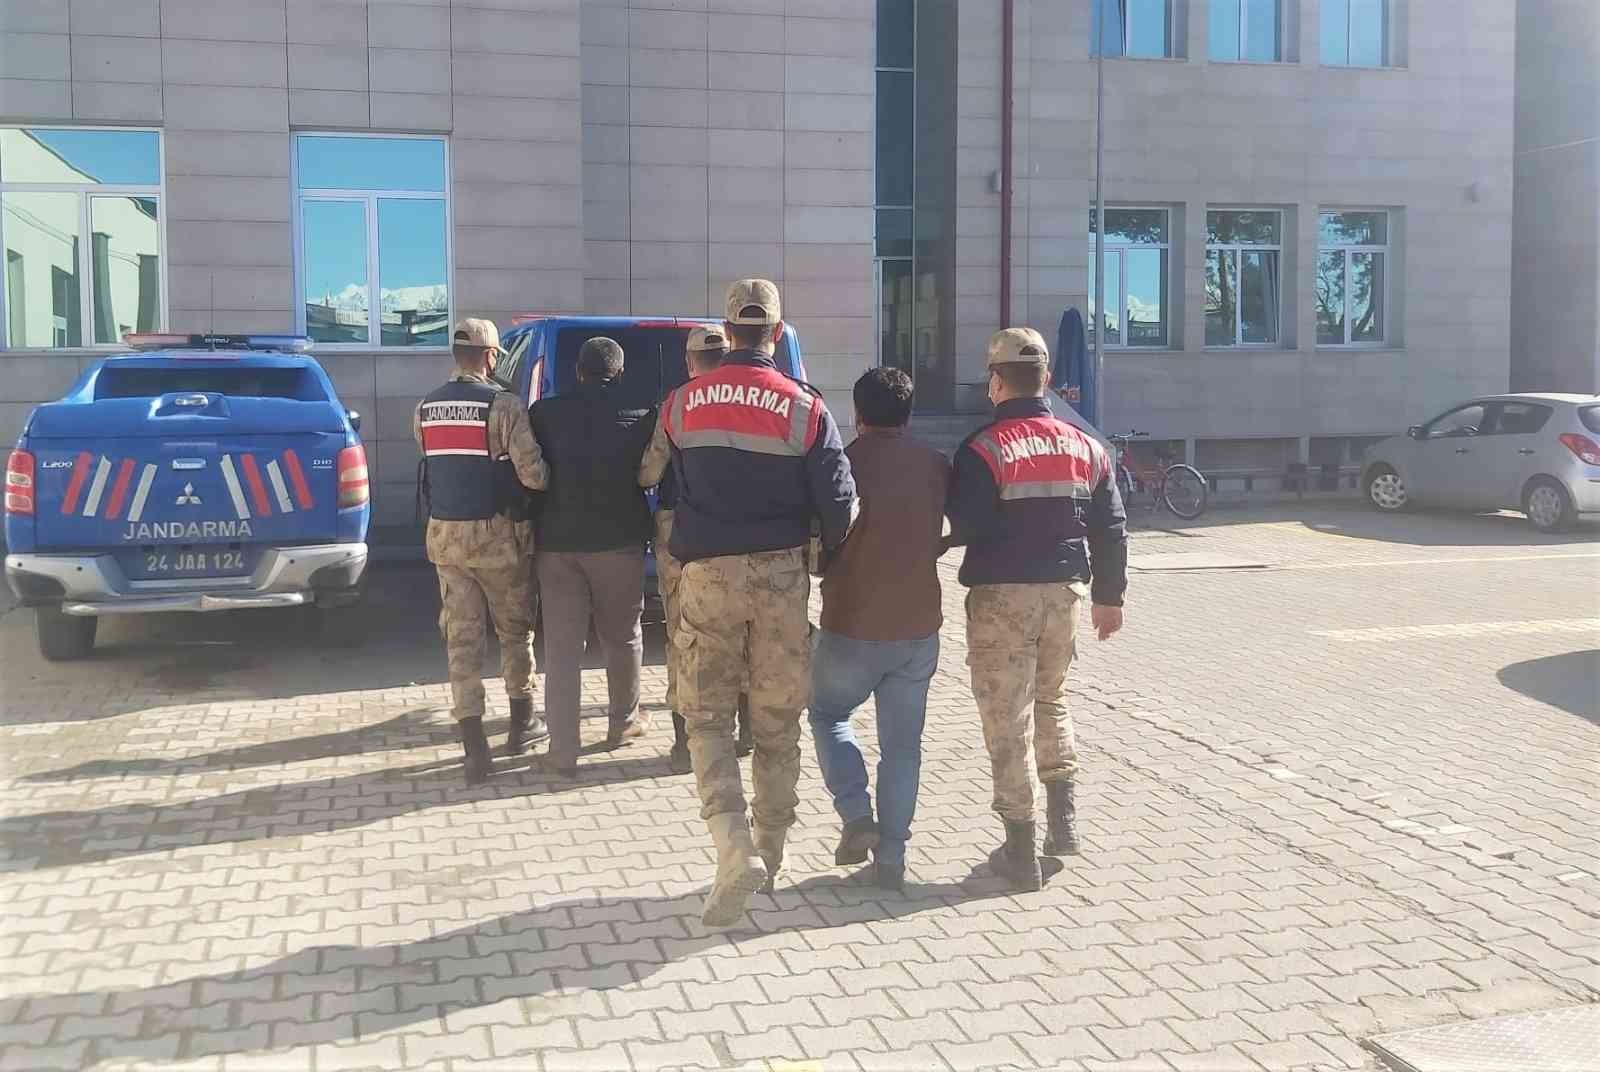 Erzincan’da sulama vanalarını çalan 2 kişi tutuklandı #erzincan